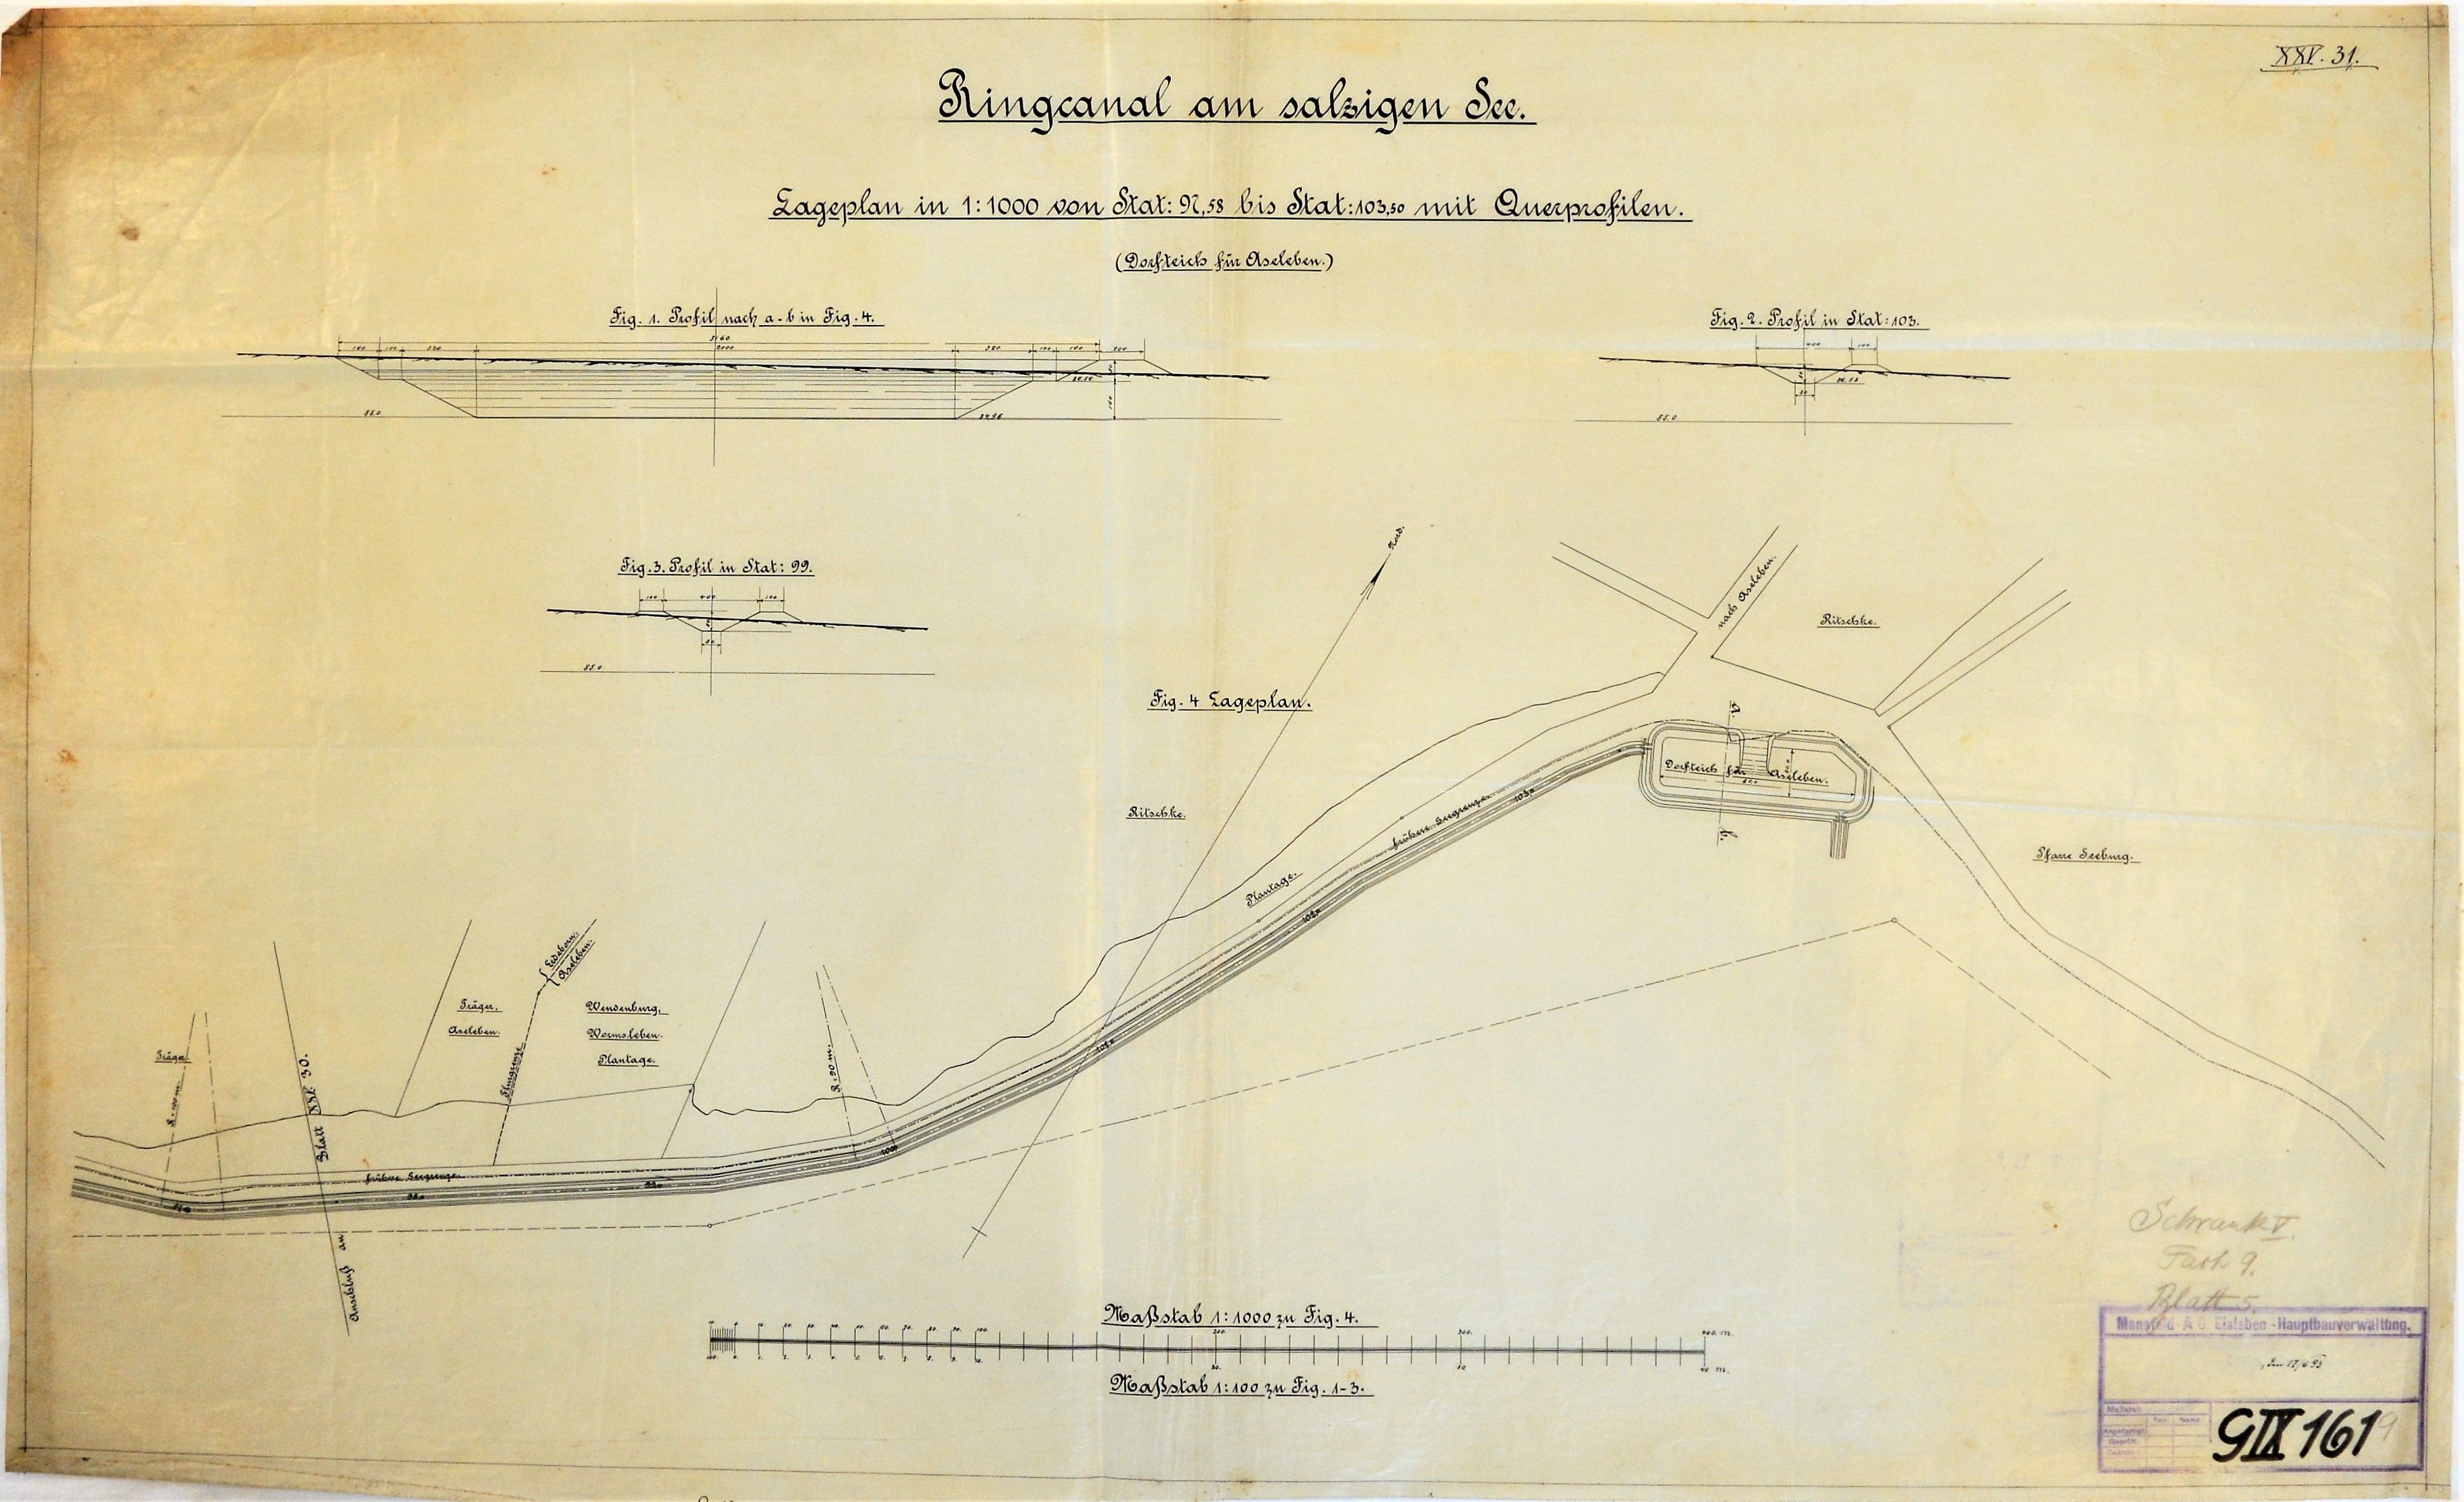 Ringcanal am salzigen See. Lageplan von Stat. 97,58 bis Stat. 103,50 mit Querprofilen. (Dorfteich für Aseleben.) (Mansfeld-Museum im Humboldt-Schloss CC BY-NC-SA)